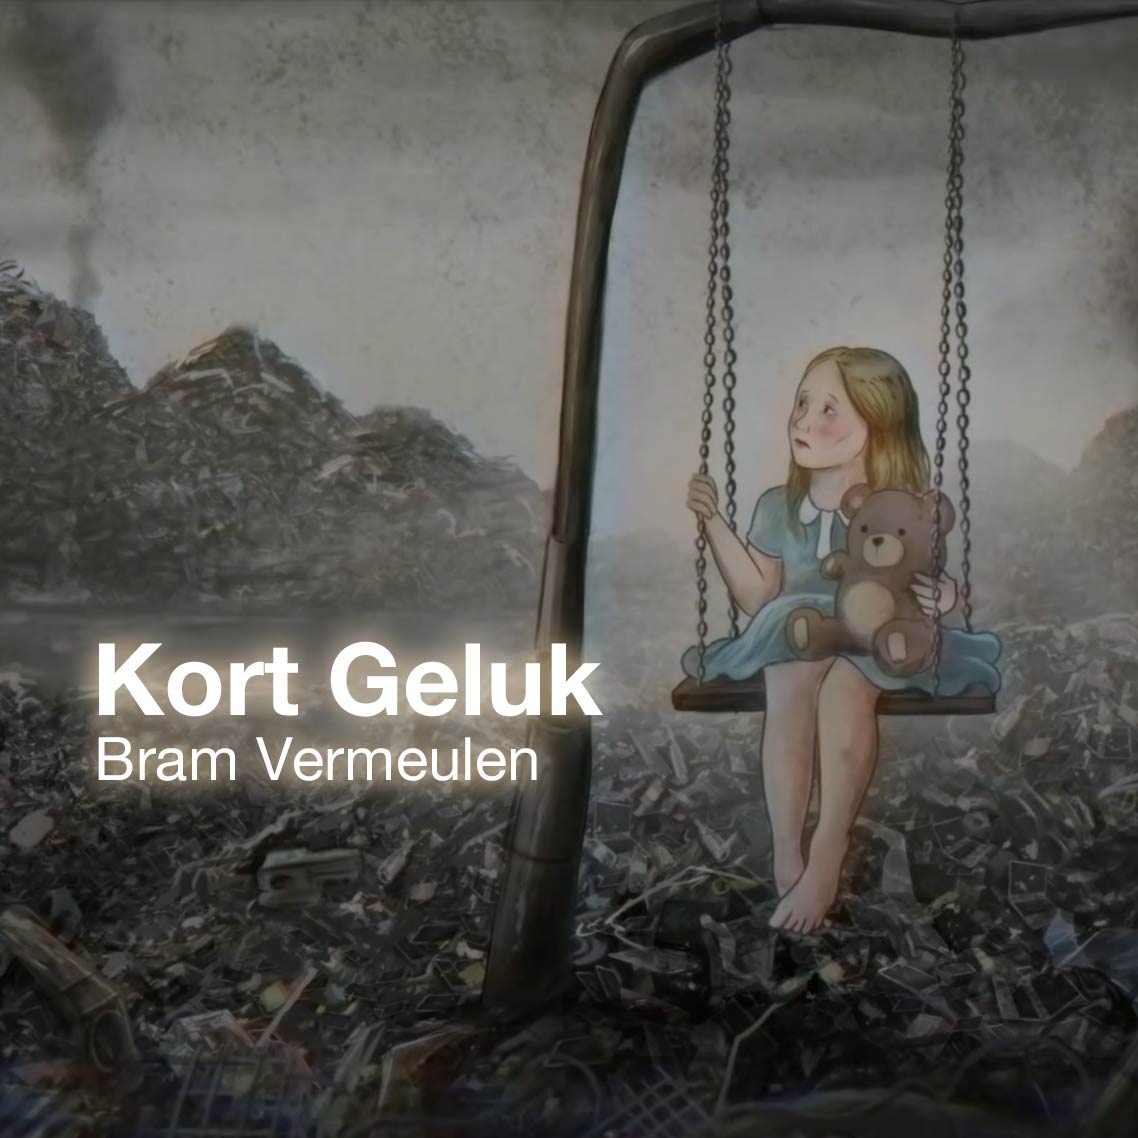 Kort Geluk | music video 